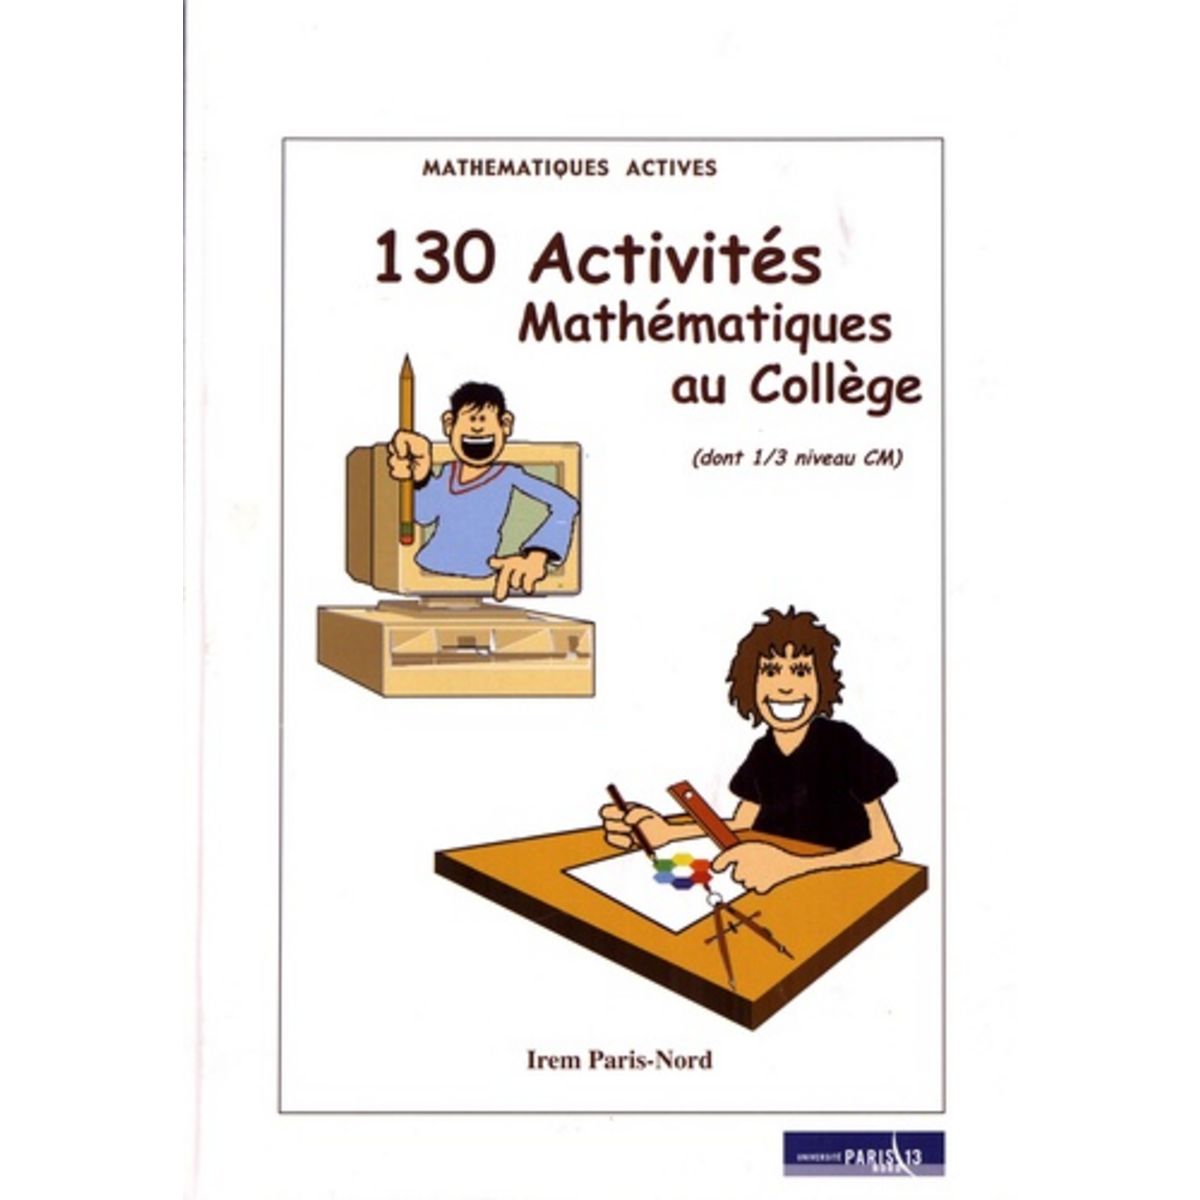  130 ACTIVITES MATHEMATIQUES AU COLLEGE (DONT 1/3 NIVEAU CM), IREM Paris-Nord